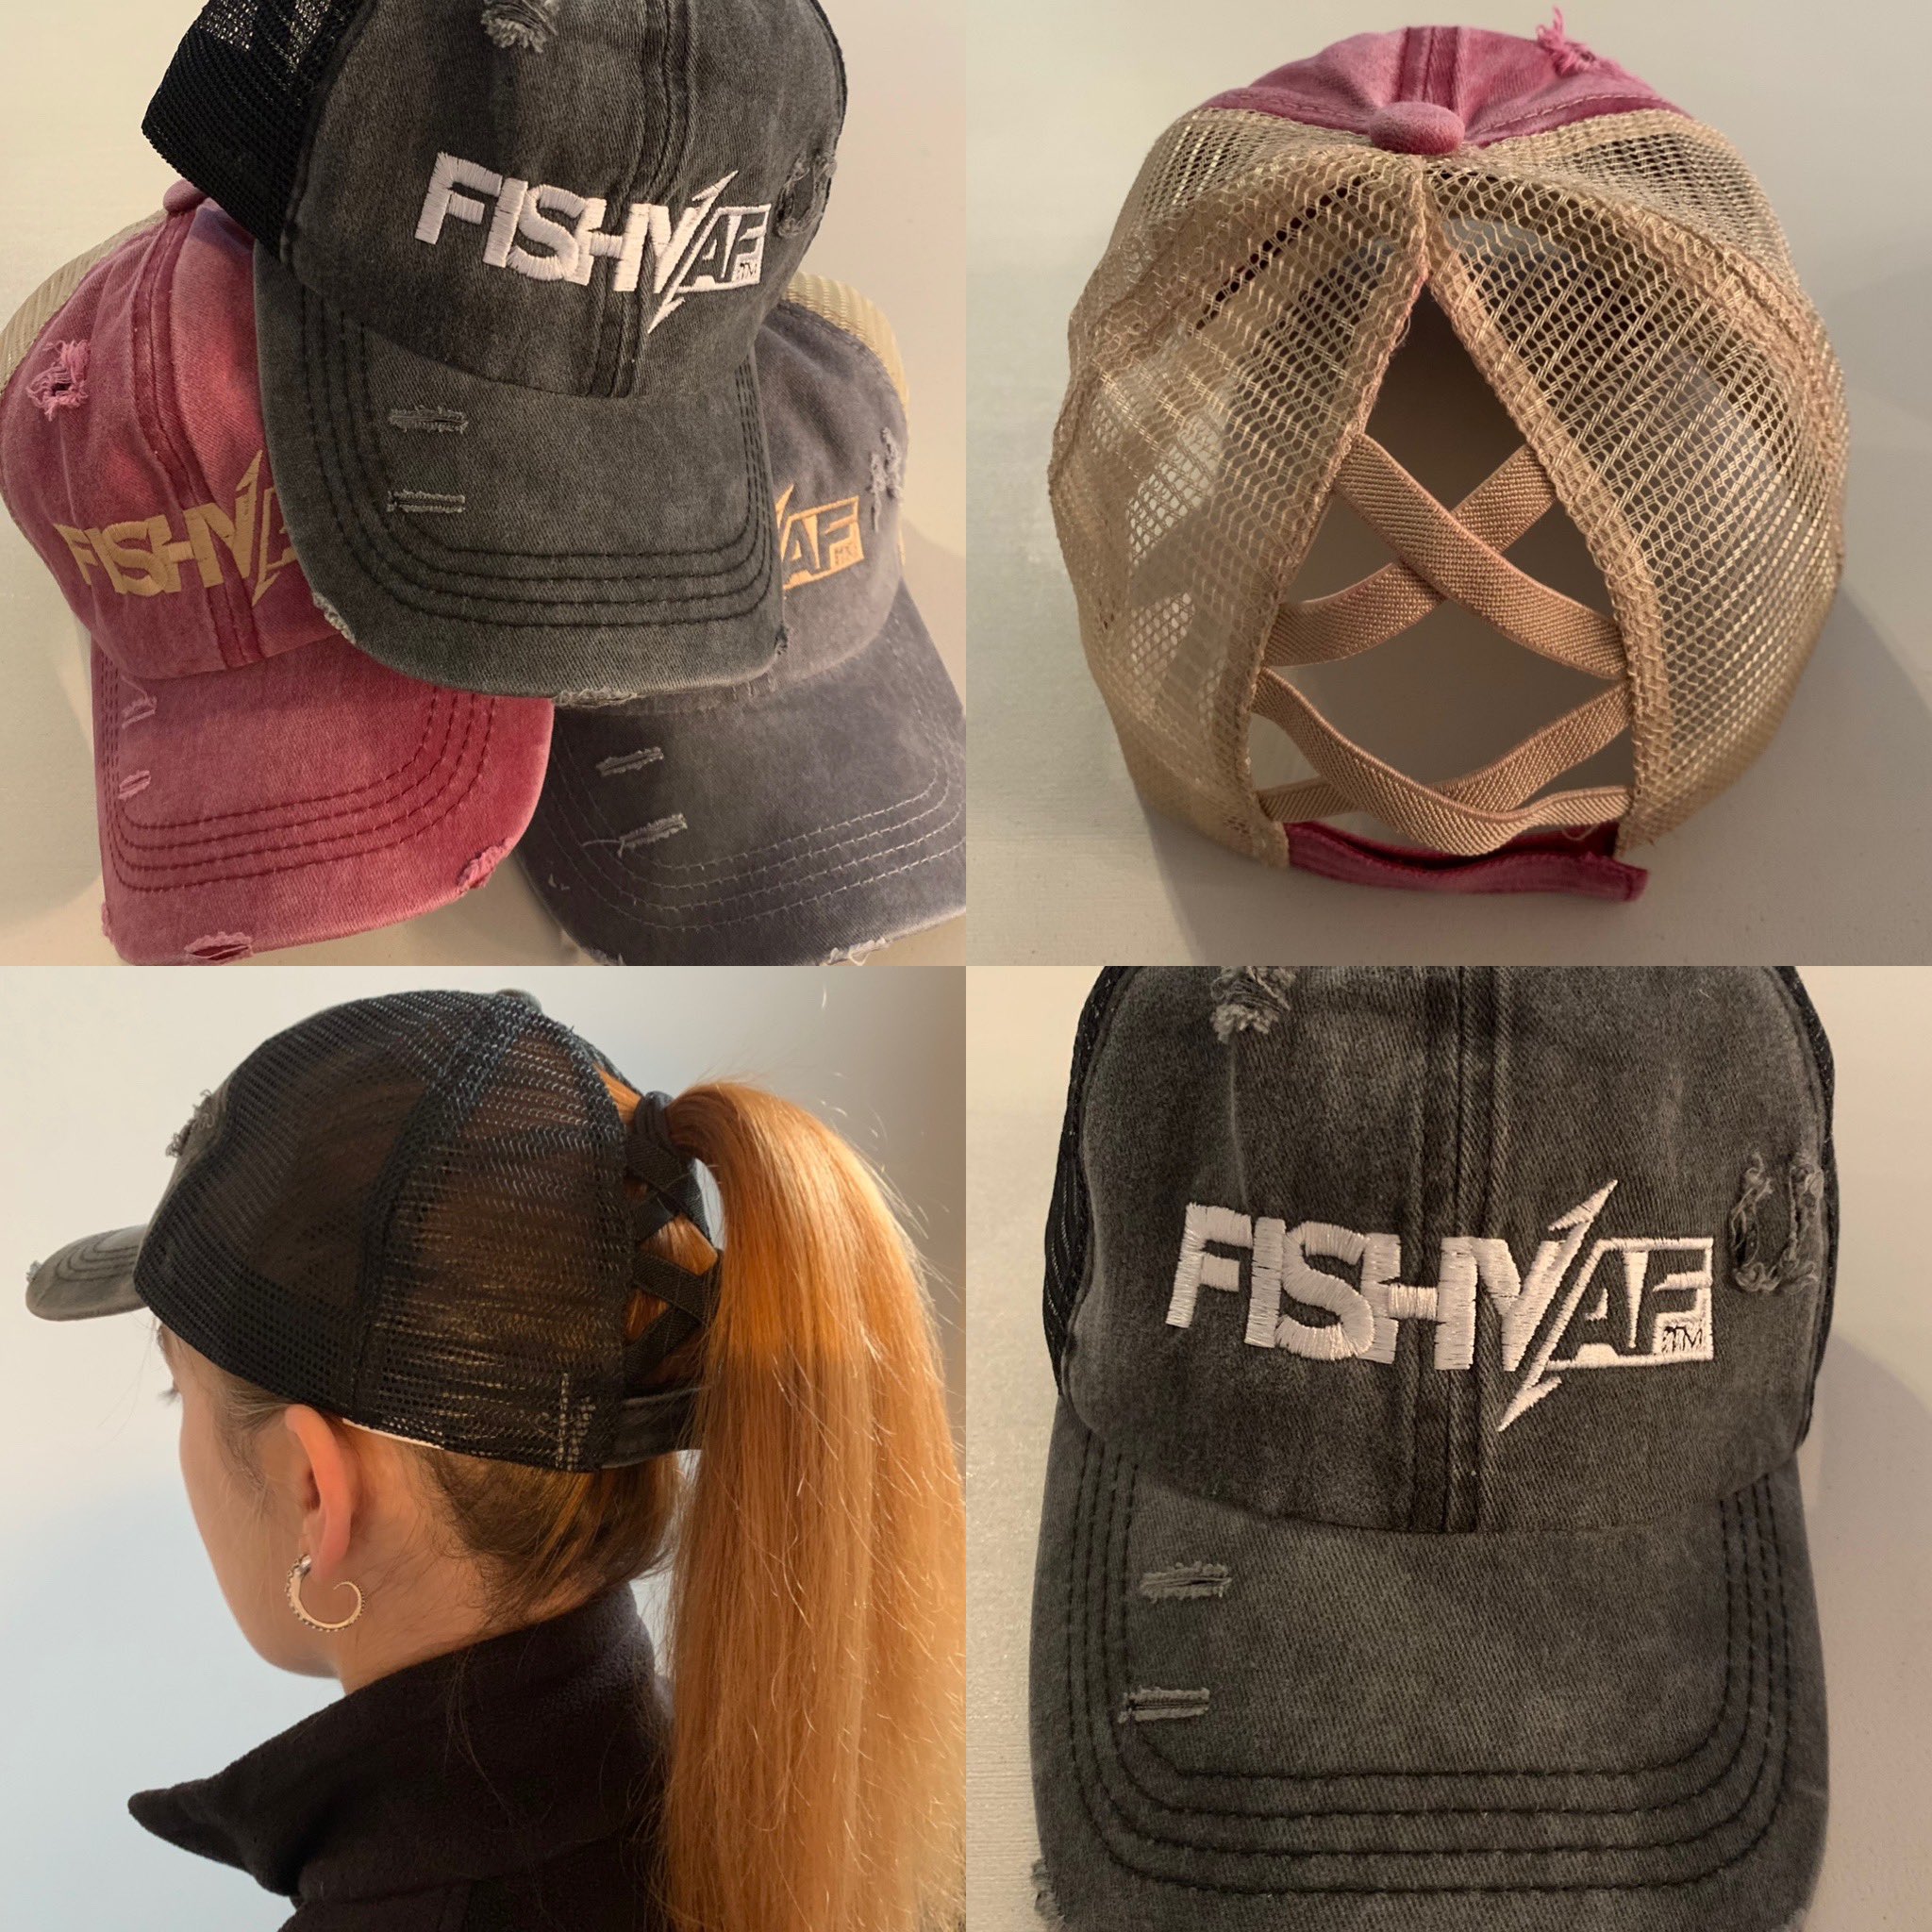 The Girls Of Fishing (@GirlsofFishing) / X